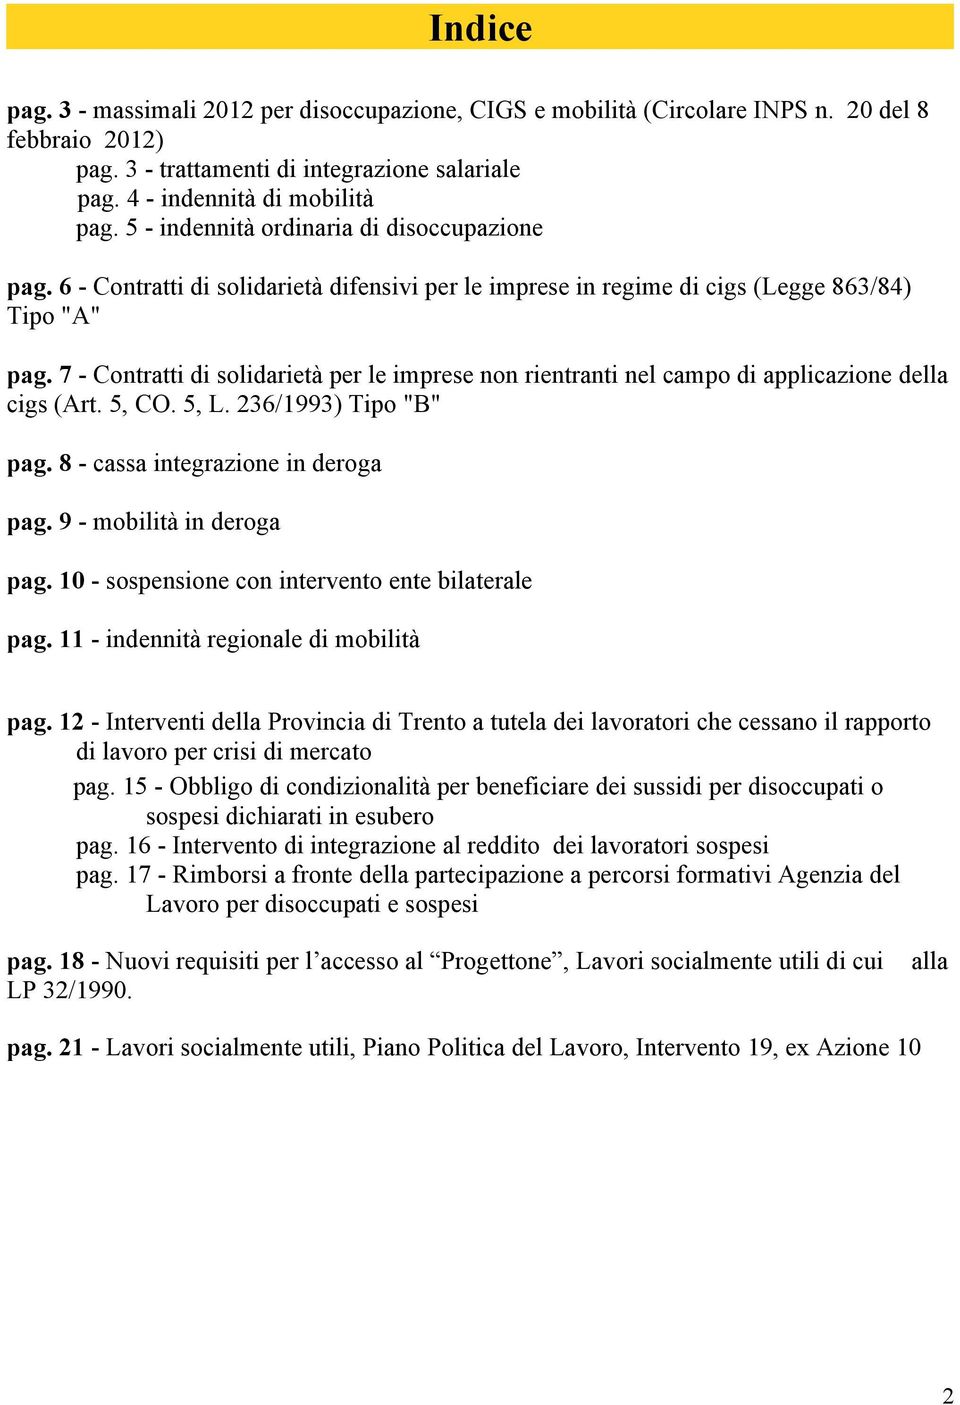 7 - Contratti di solidarietà per le imprese non rientranti nel campo di applicazione della cigs (Art. 5, CO. 5, L. 236/1993) Tipo "B" pag. 8 - cassa integrazione in deroga pag.